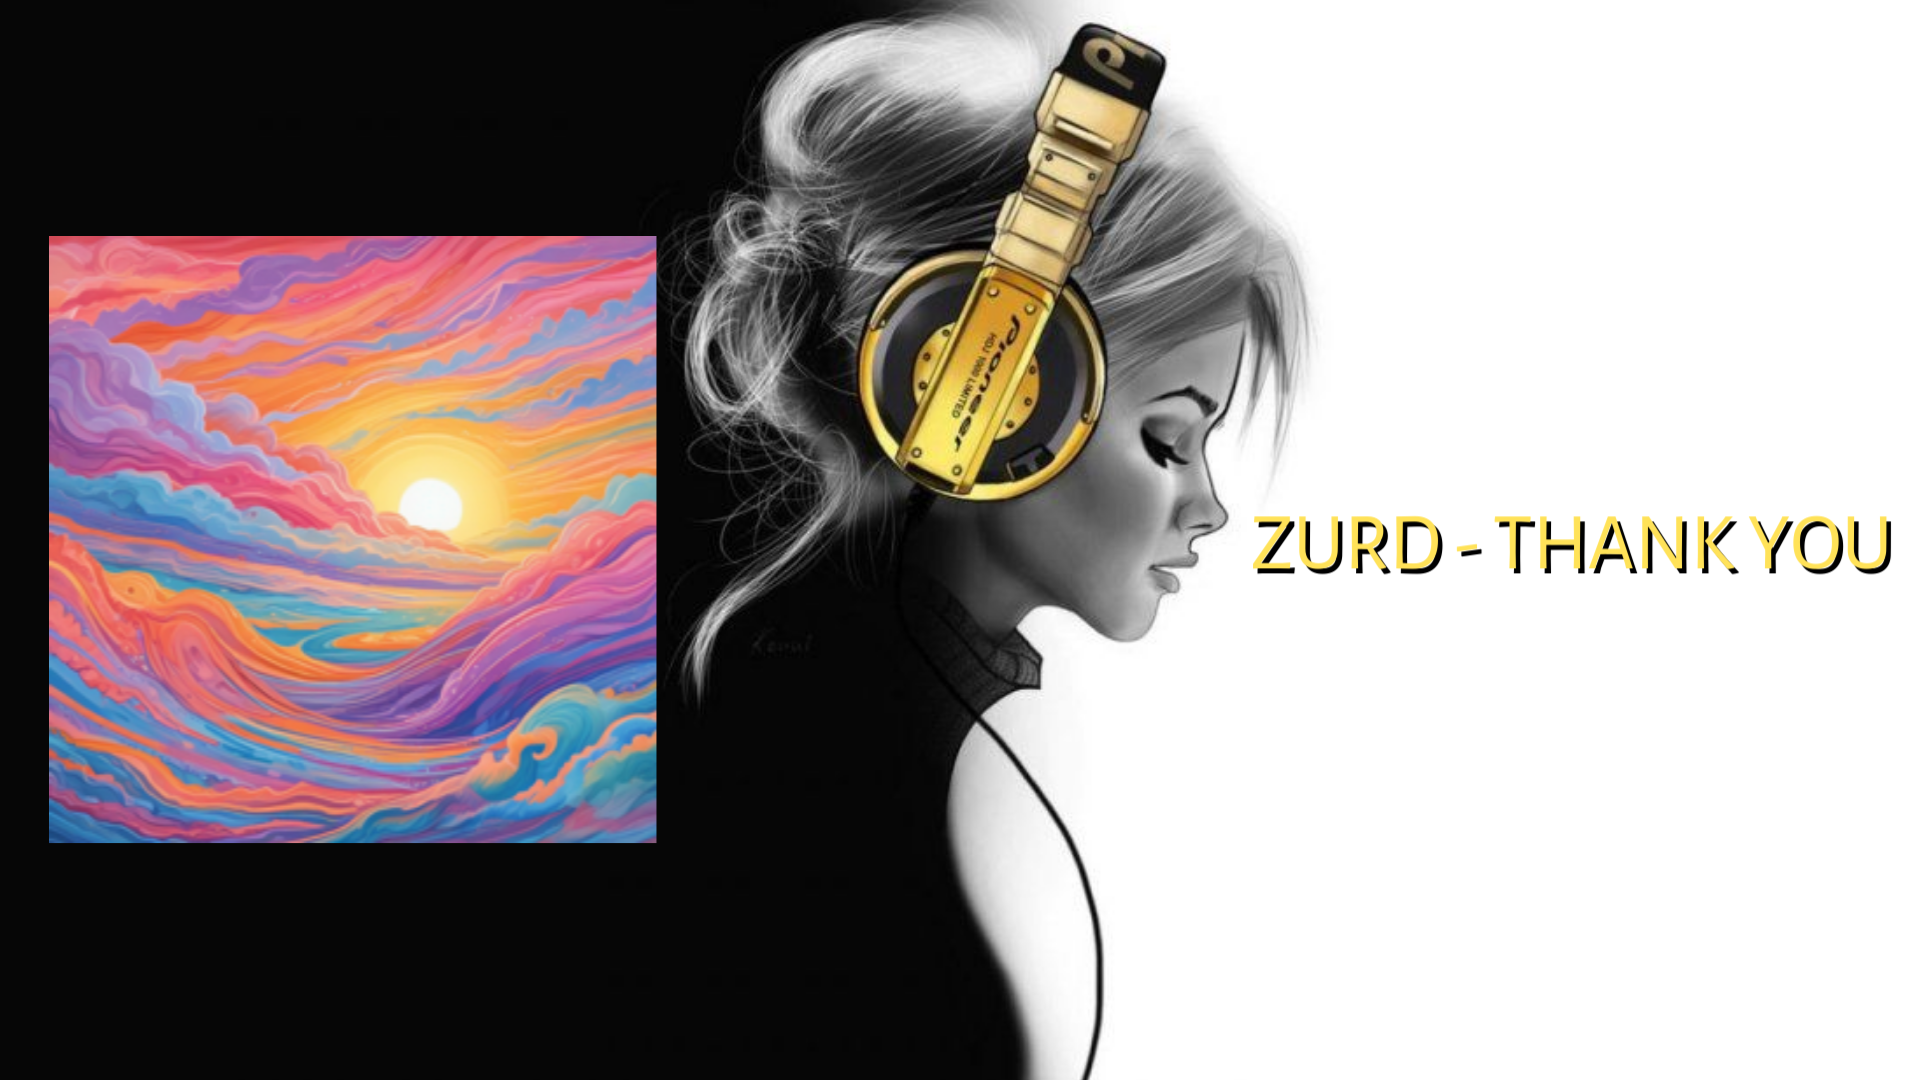 Zurd - Thank You